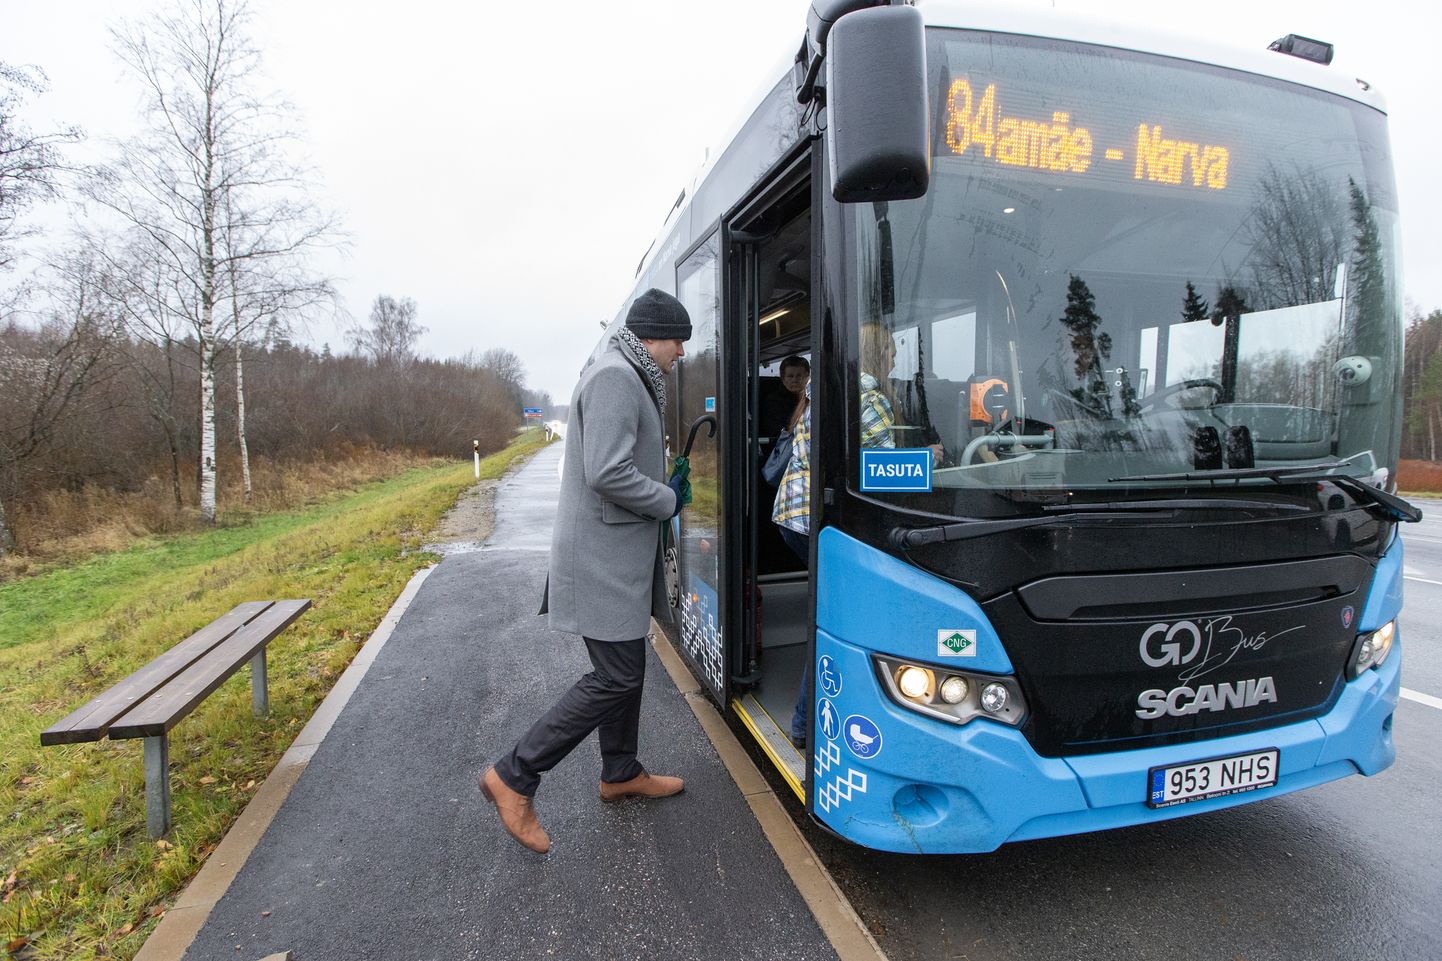 Министр регионального развития Мадис Каллас впервые проехался на бесплатном автобусе месяц тому назад в Ида-Вирумаа. Вероятно, это стало для него также последней подобной поездкой.